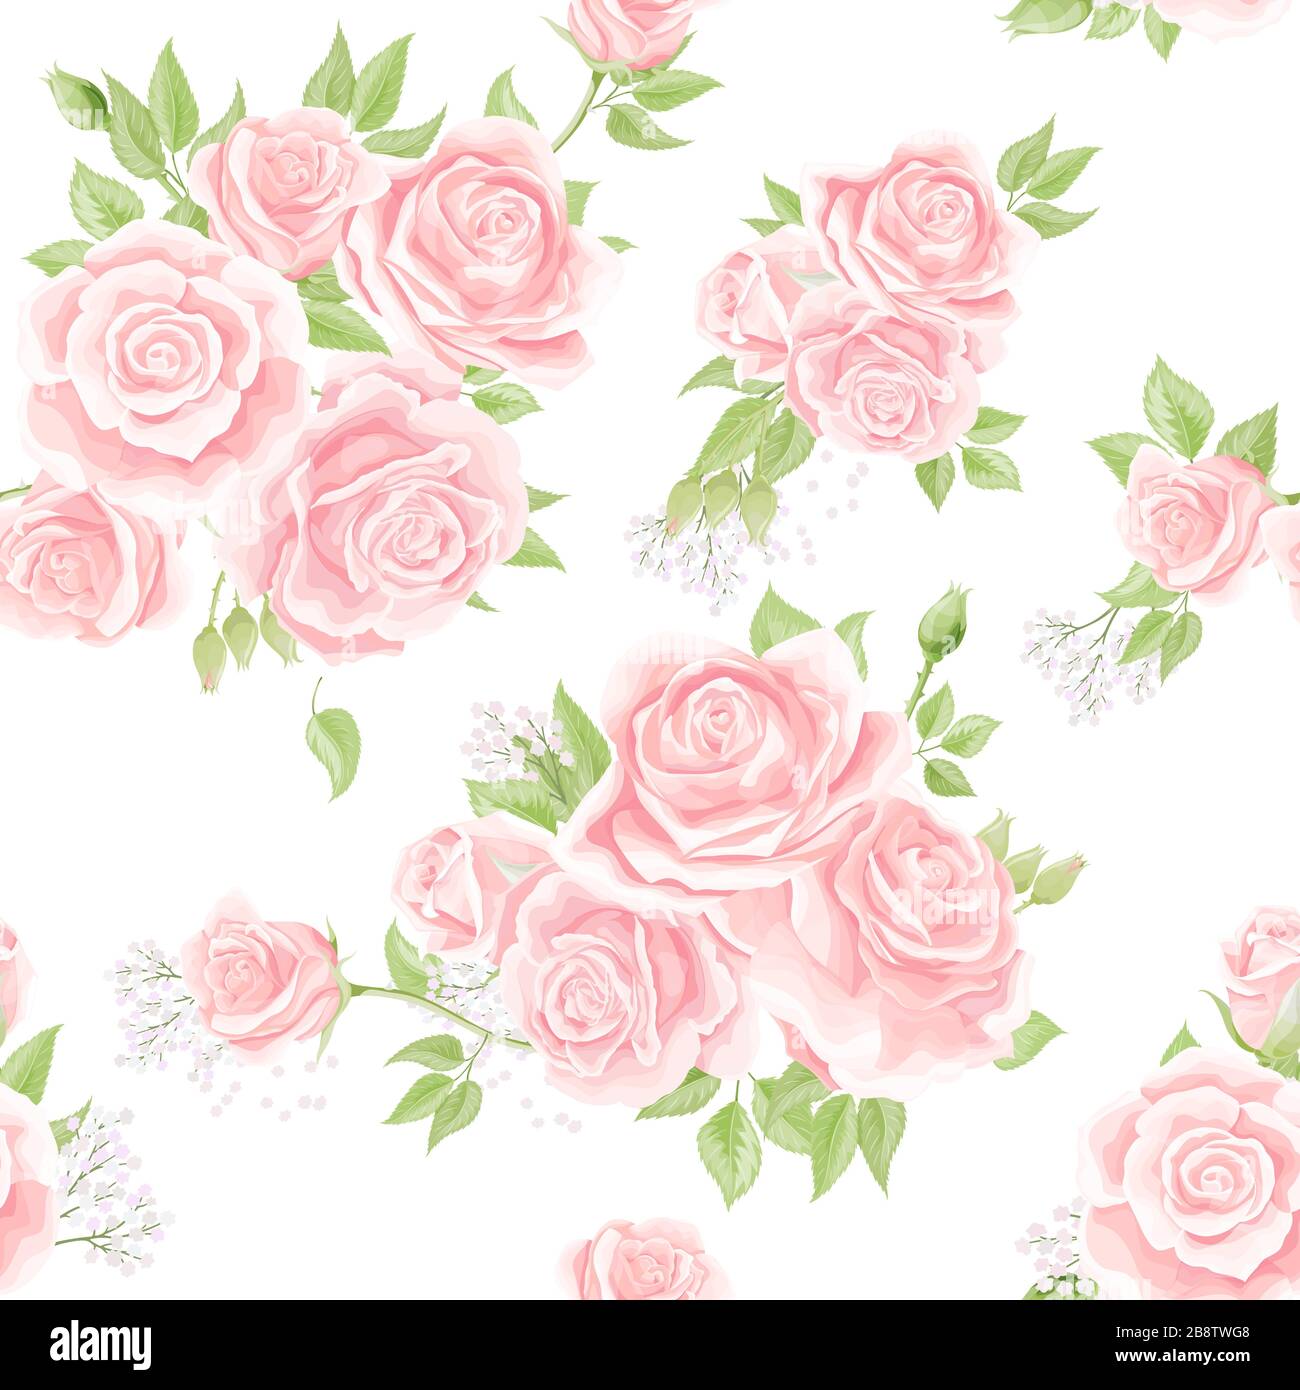 Họa tiết hoa hồng cổ điển màu kem hồng liền mạch mang đến sự thanh lịch và tinh tế cho màn hình của bạn. Những bông hoa truyền thống với màu kem hồng mềm mại và liên tục tạo nên một kiểu dáng tuyệt đẹp để trang trí cho tài liệu của bạn.